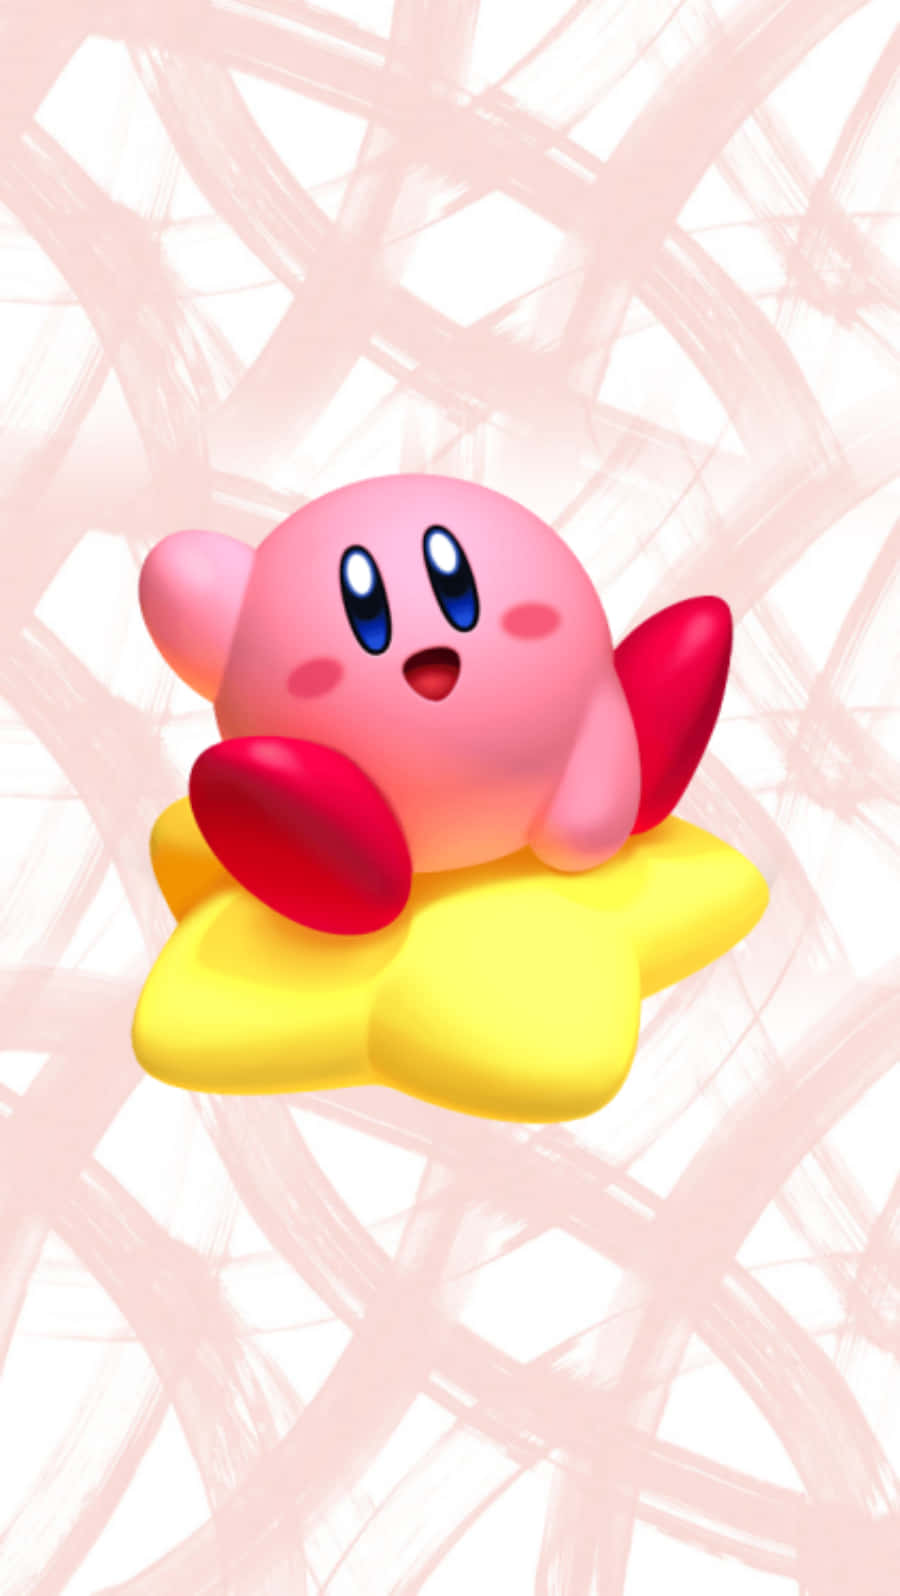 Schaudir Diesen Niedlichen Kirby-charakter An!